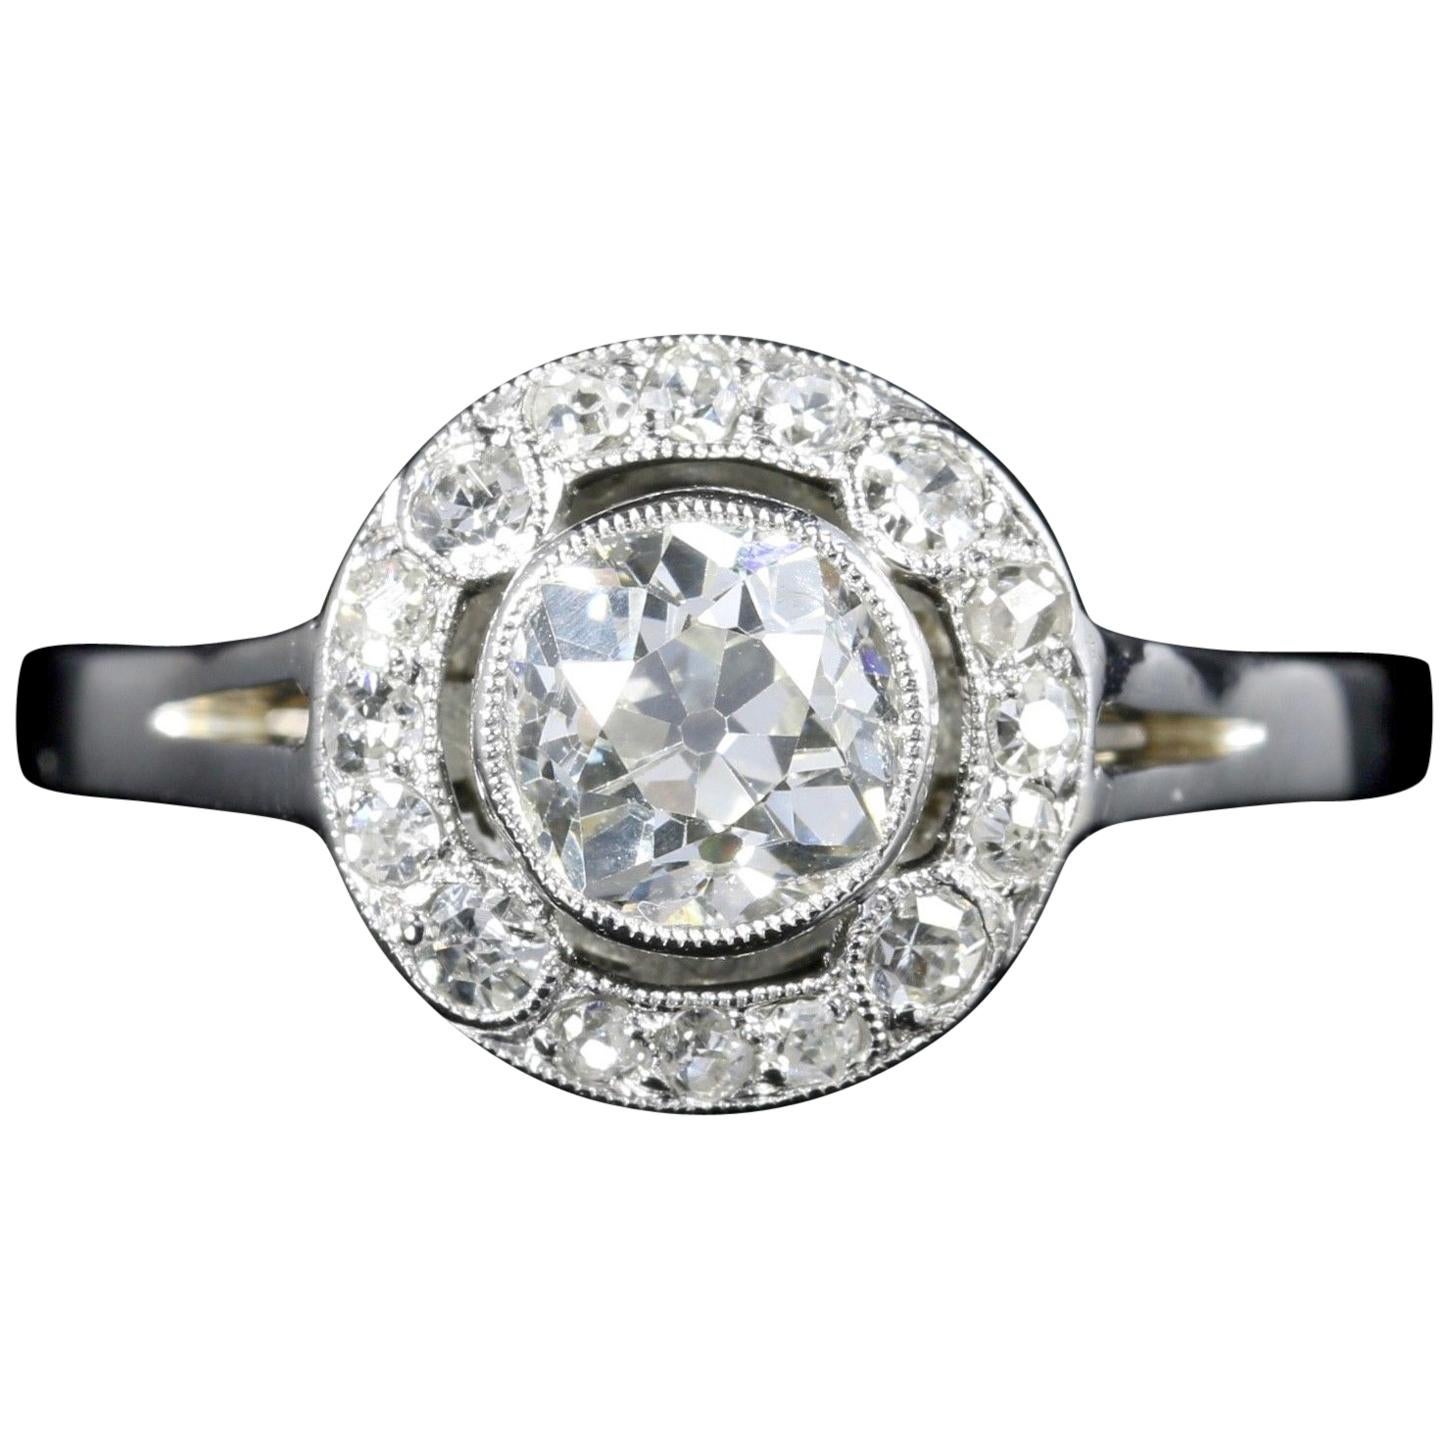 Antique Art Deco Diamond Cluster Ring Platinum Engagement 1.50 Carat